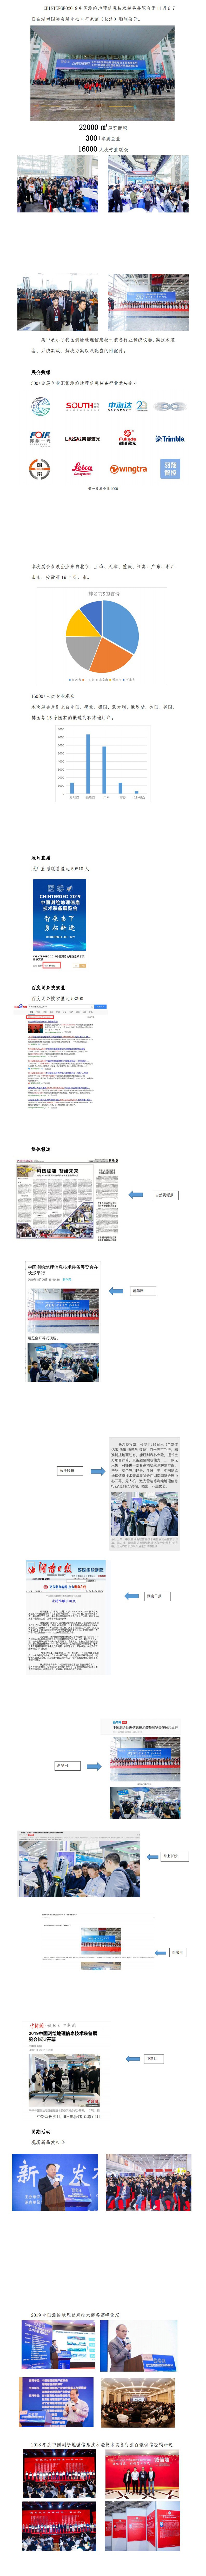 2019-1案例-CHINTERGEO2019中国测绘地理信息技术装备展览会-长沙_0(1)(1).jpg